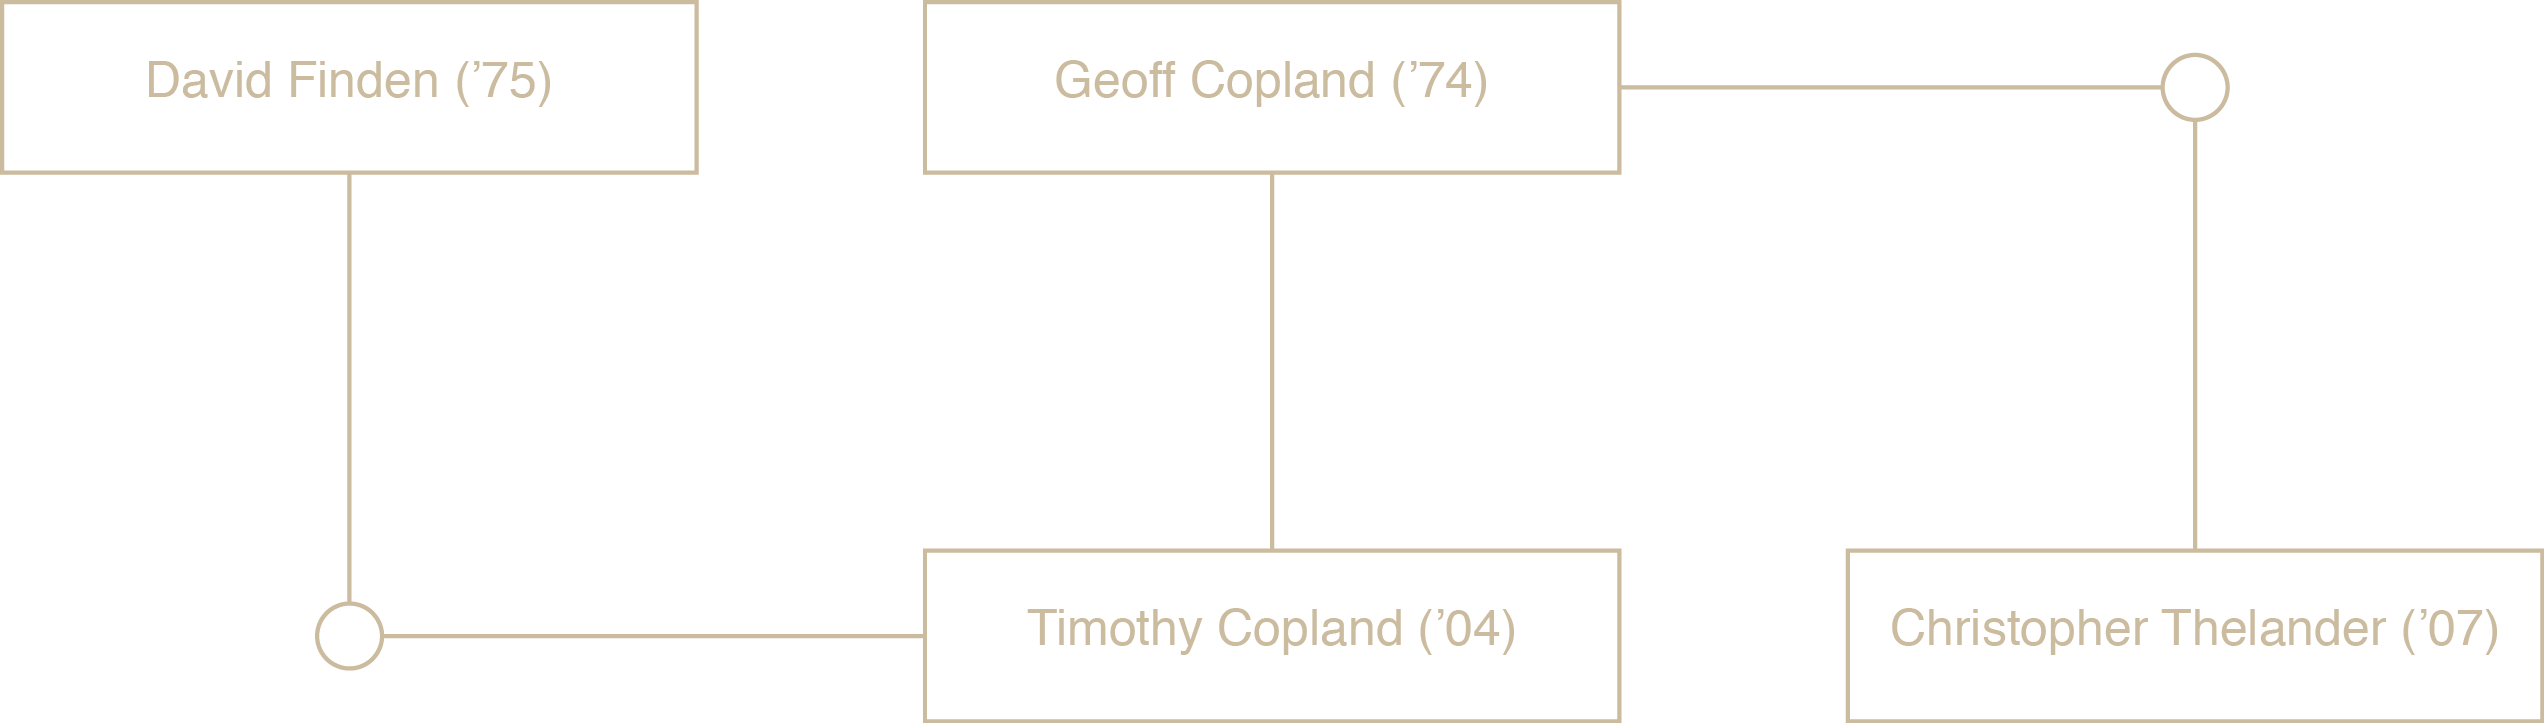 Copland family tree